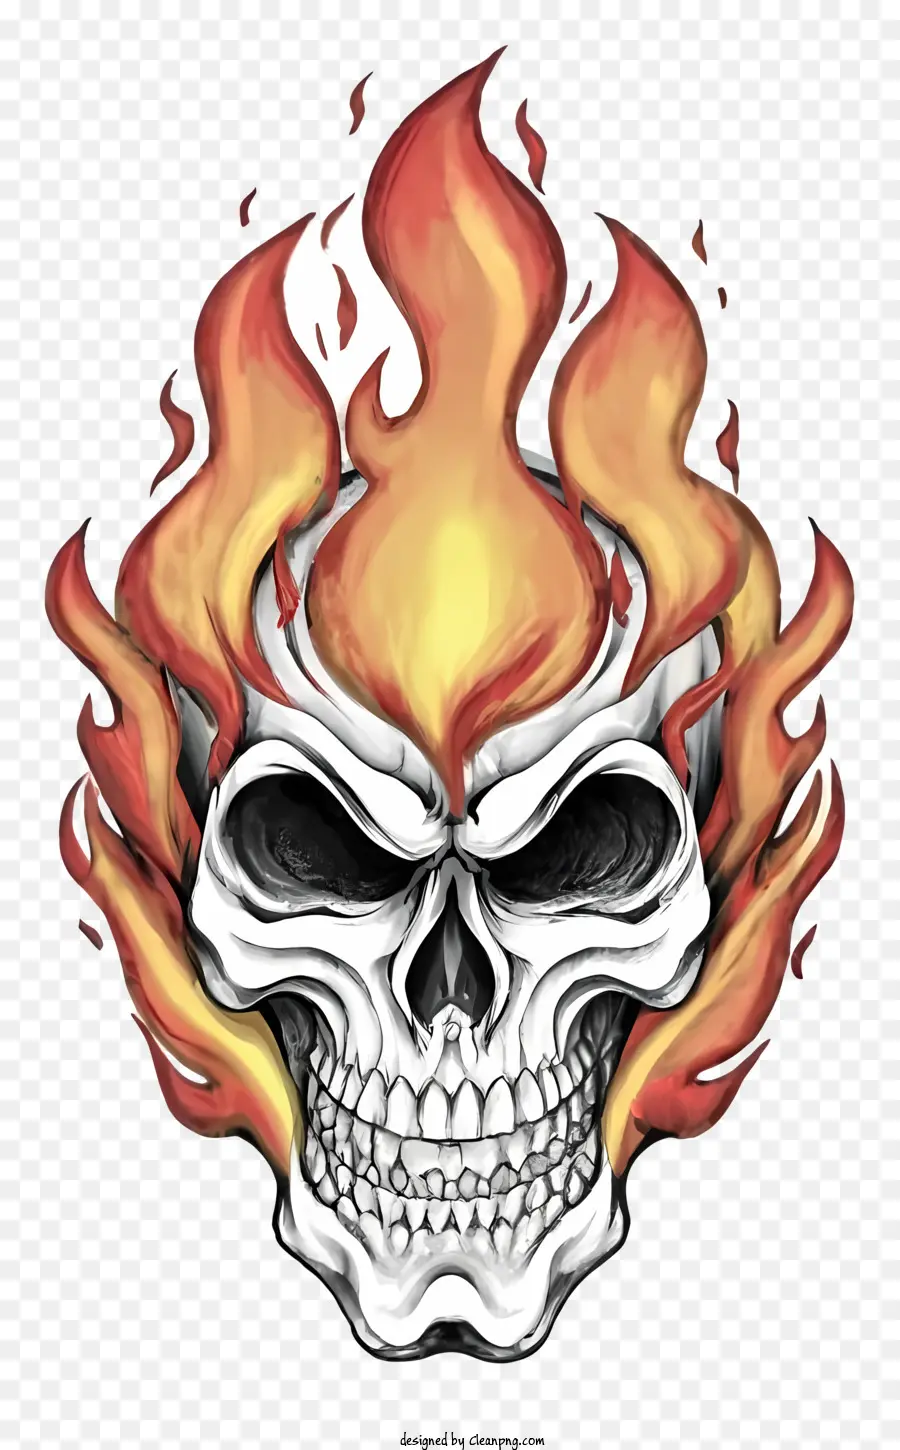 Fiamme del cranio fiamme rosse fiamme arancione Black contorno - Skull fiammeggiante con fiamme rosse e arancioni